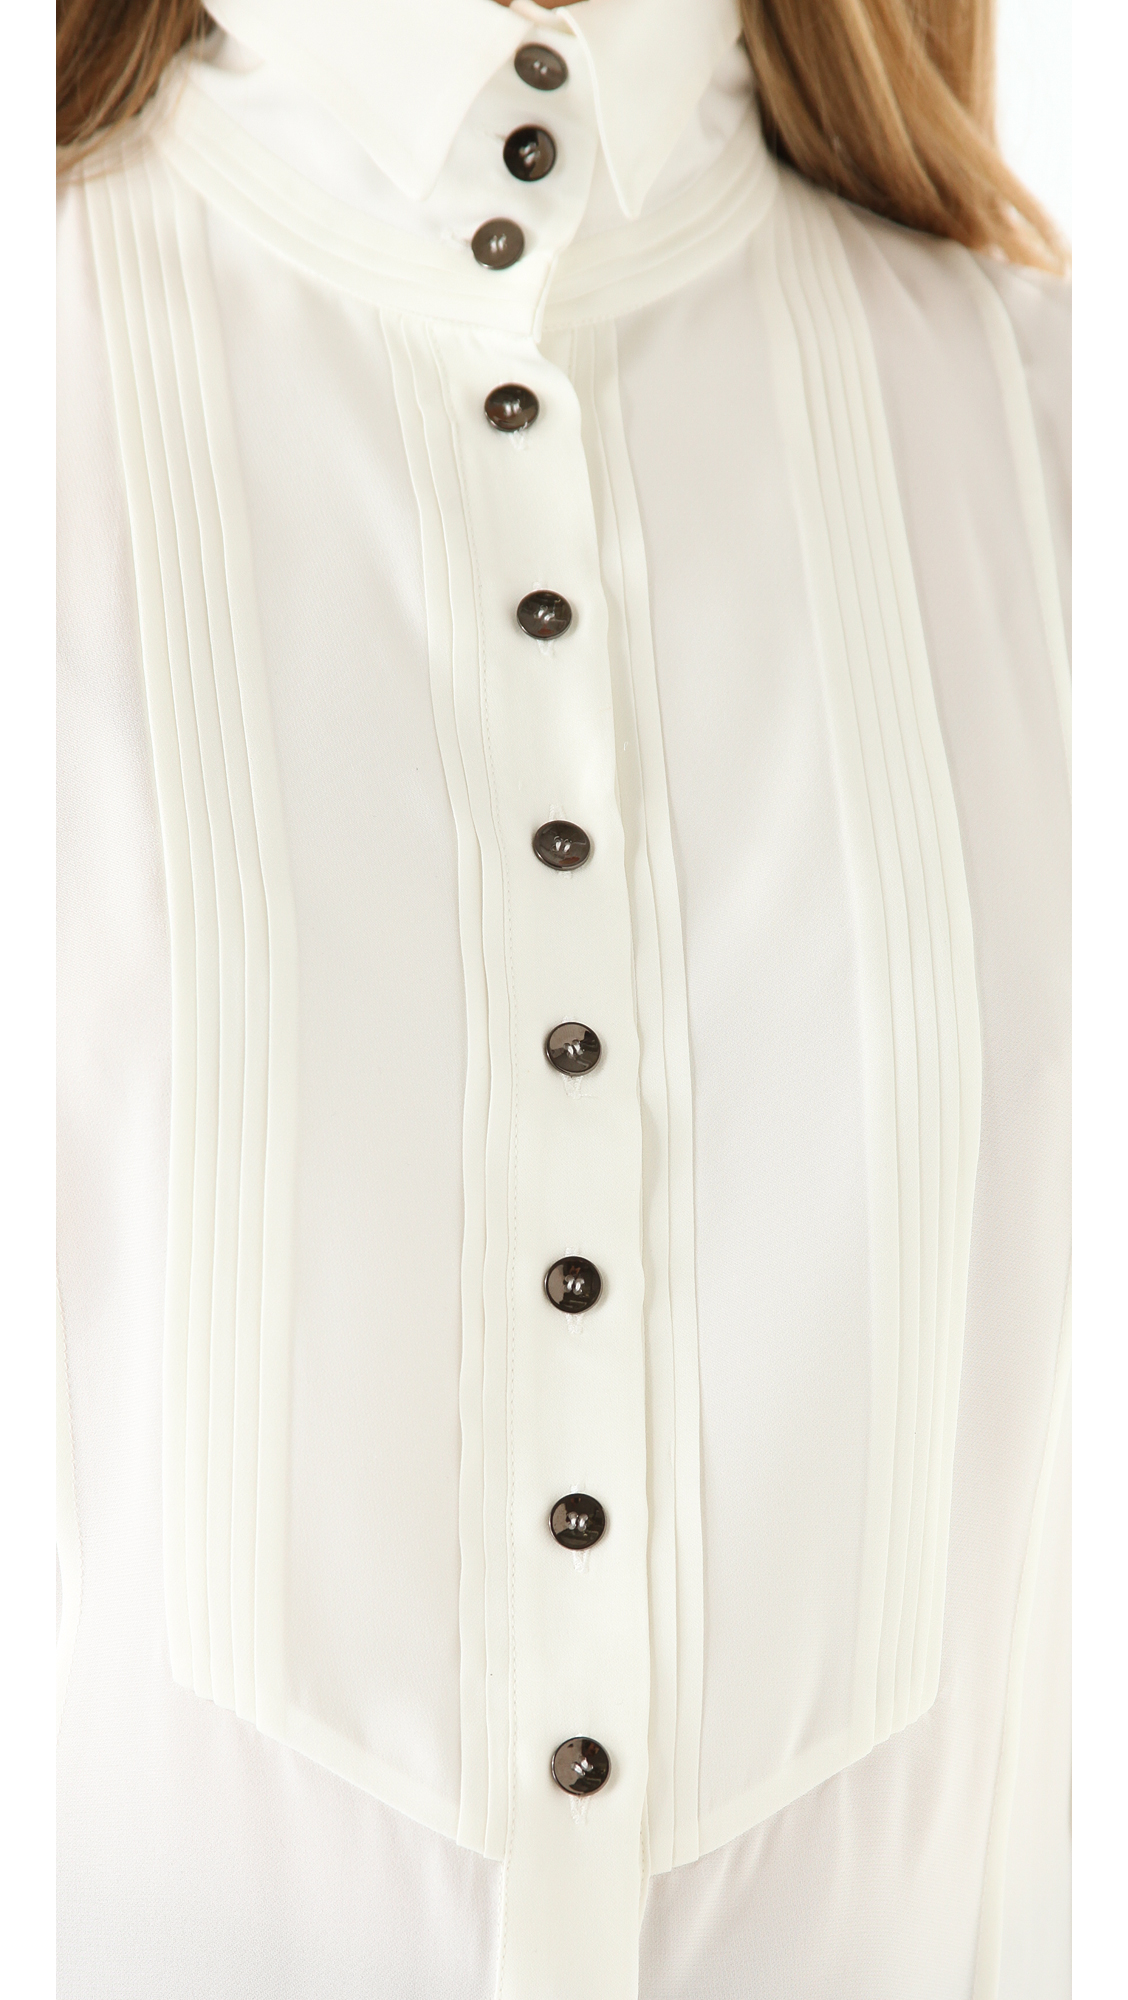 Viktor & Rolf High Collar Tuxedo Blouse in White - Lyst